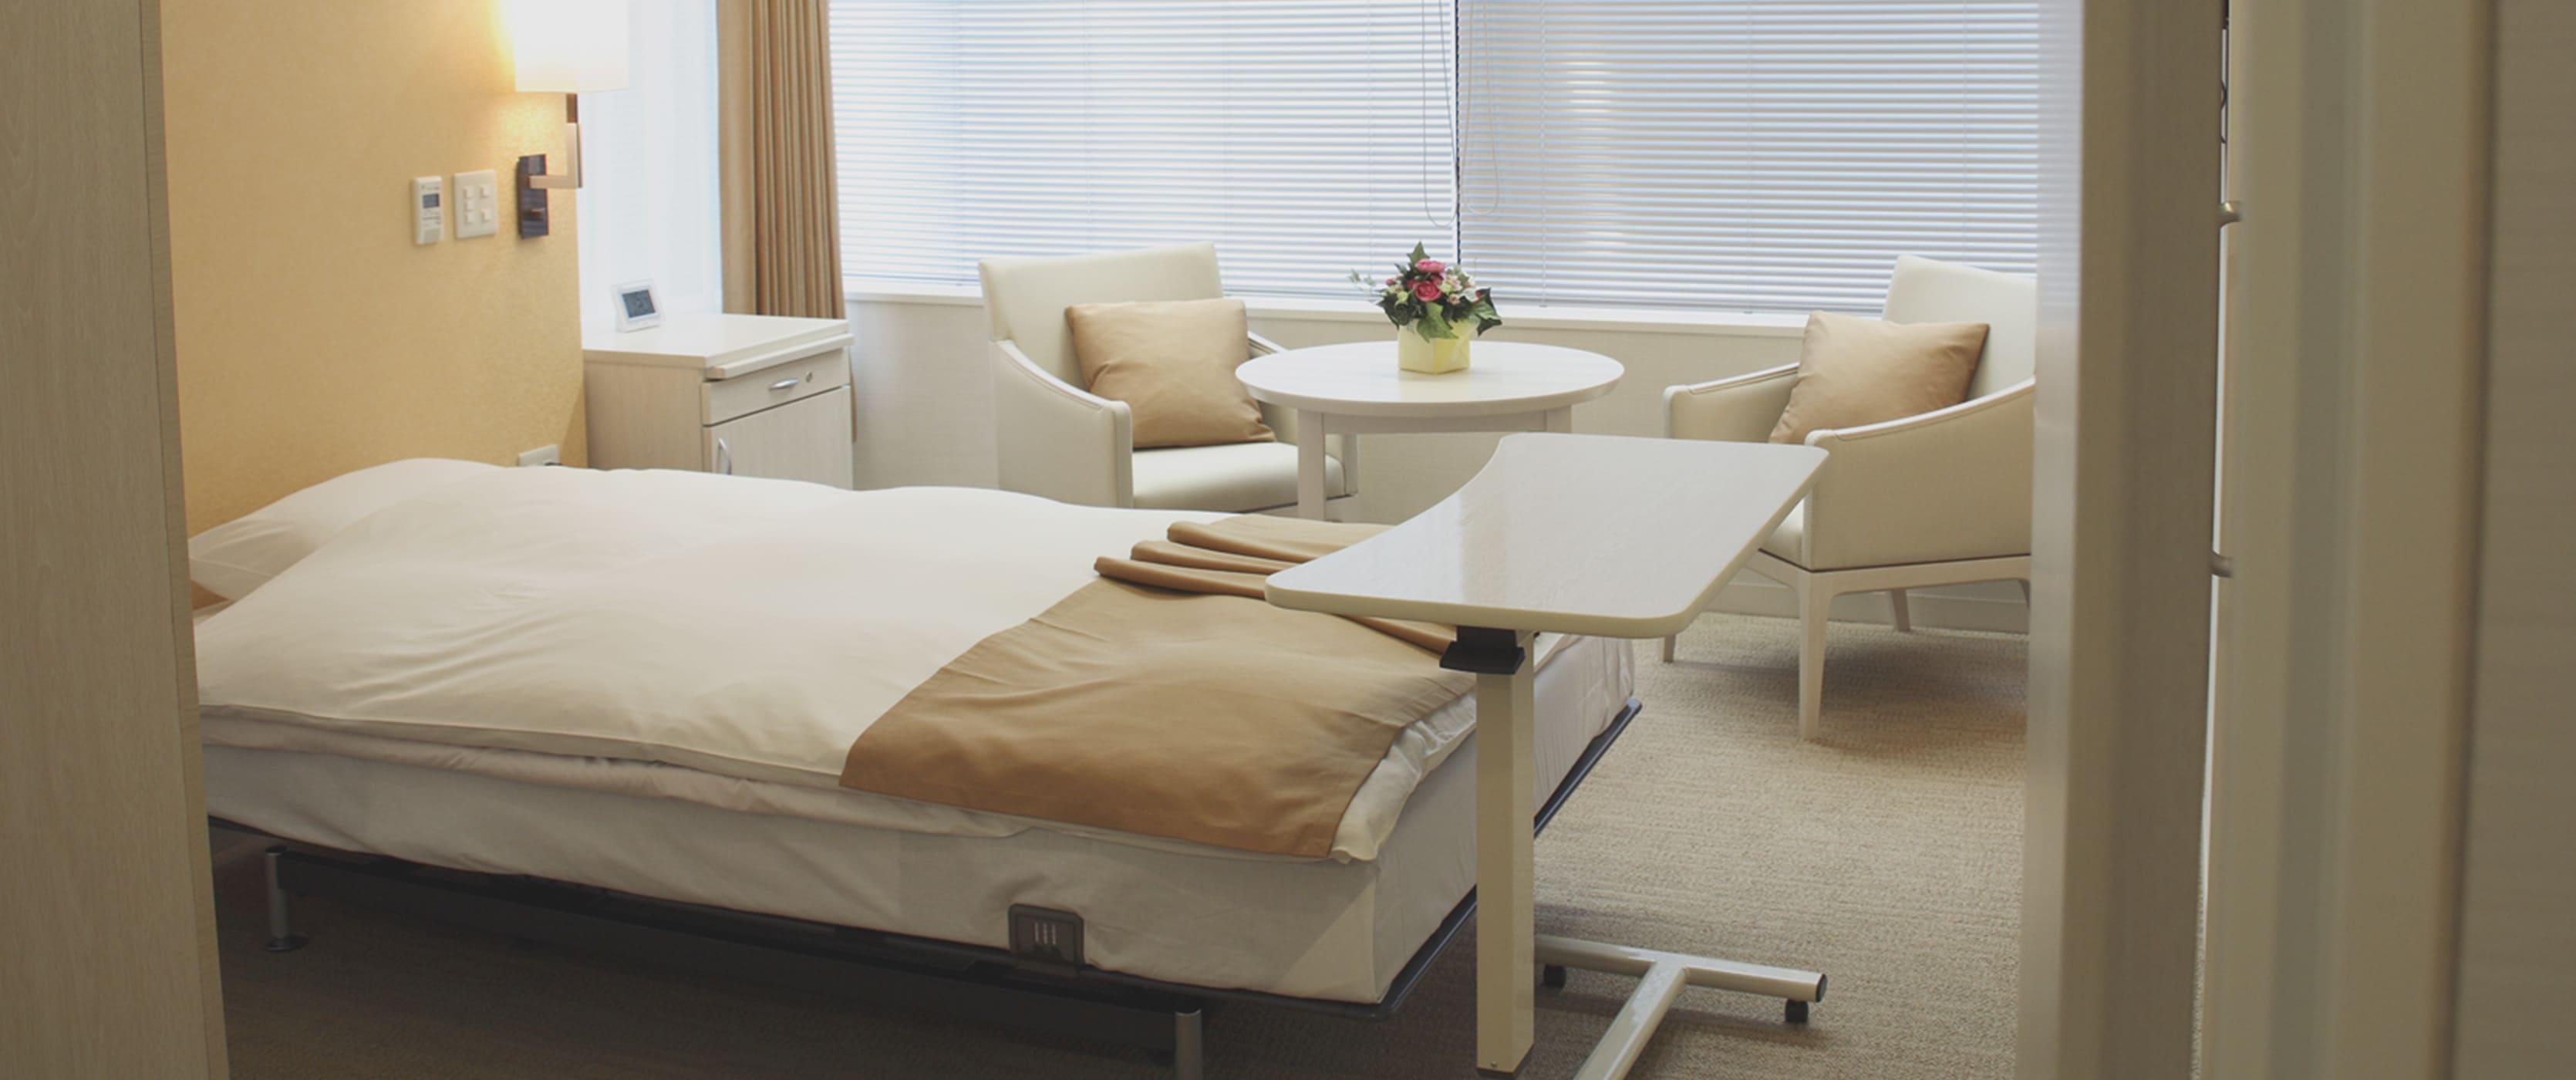 浜田病院のきれいでホテルの一室のような病室